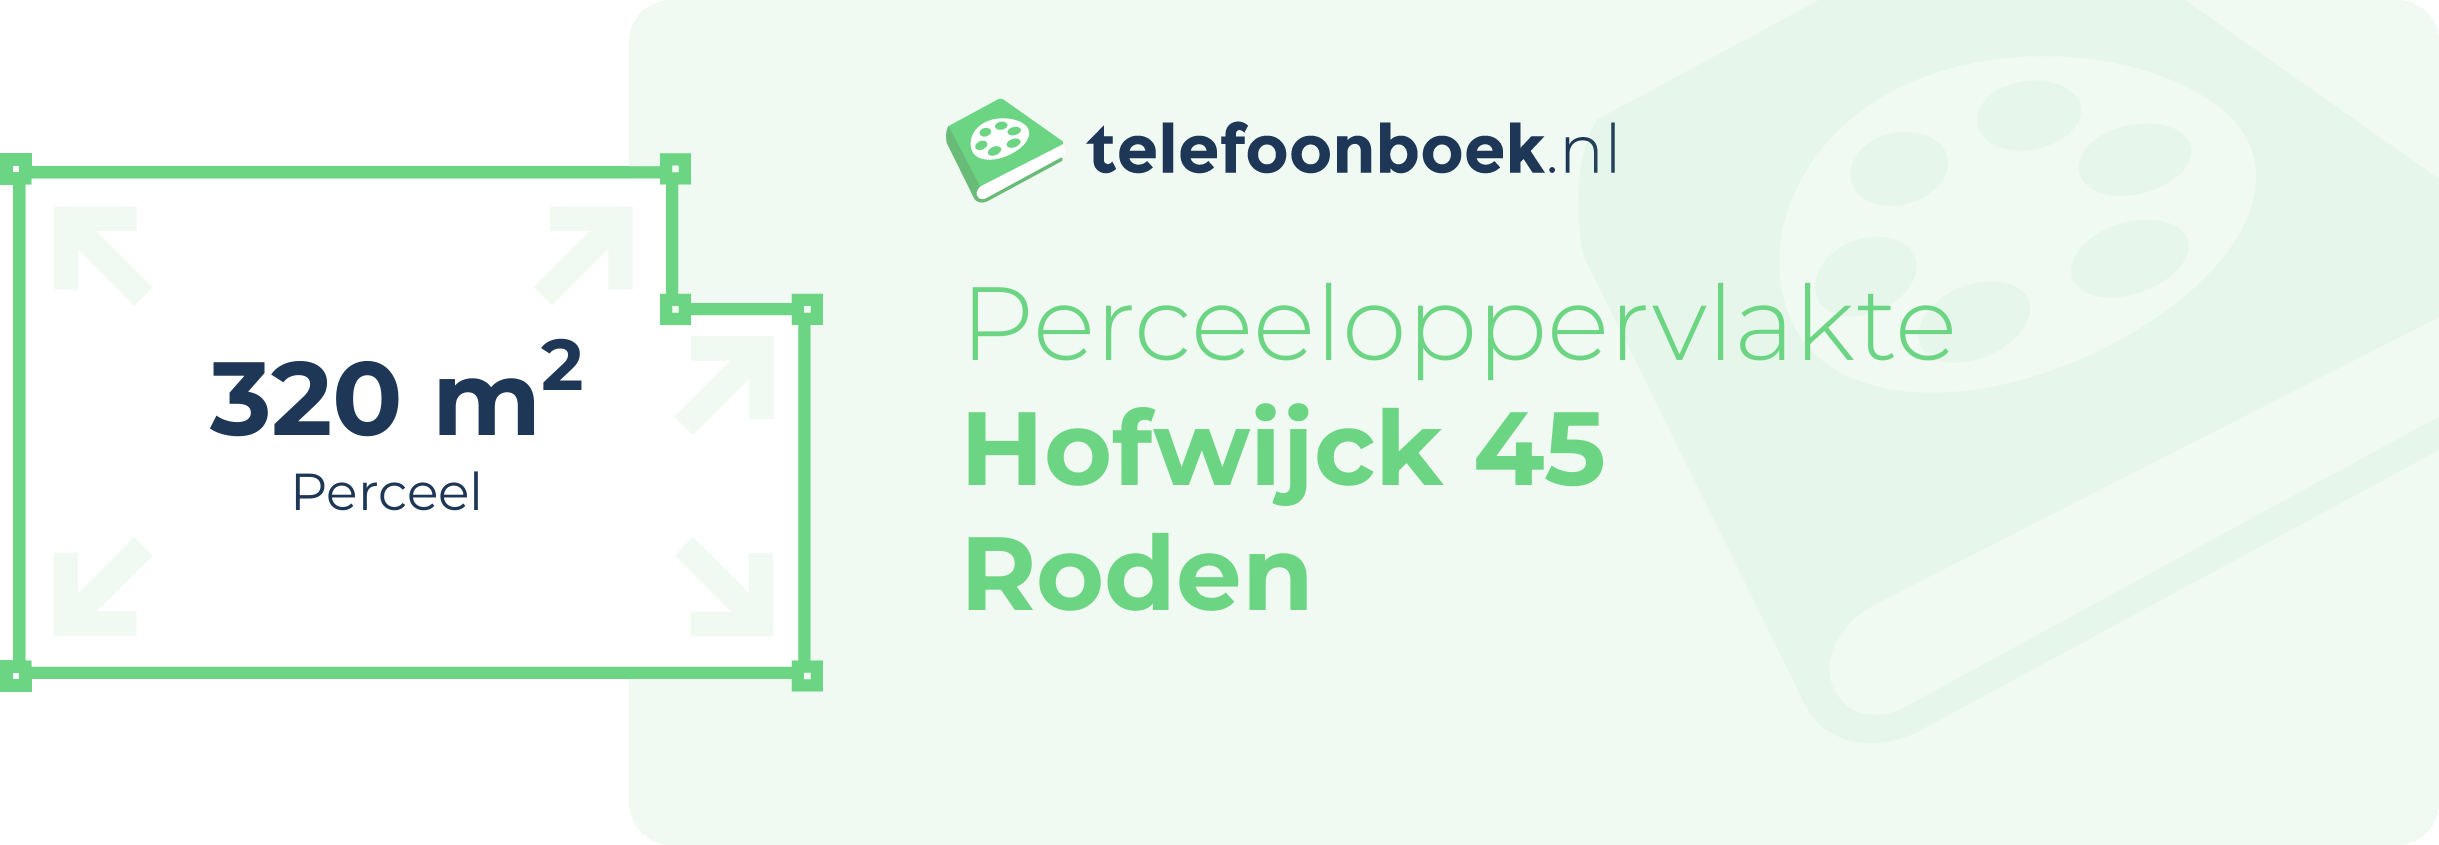 Perceeloppervlakte Hofwijck 45 Roden